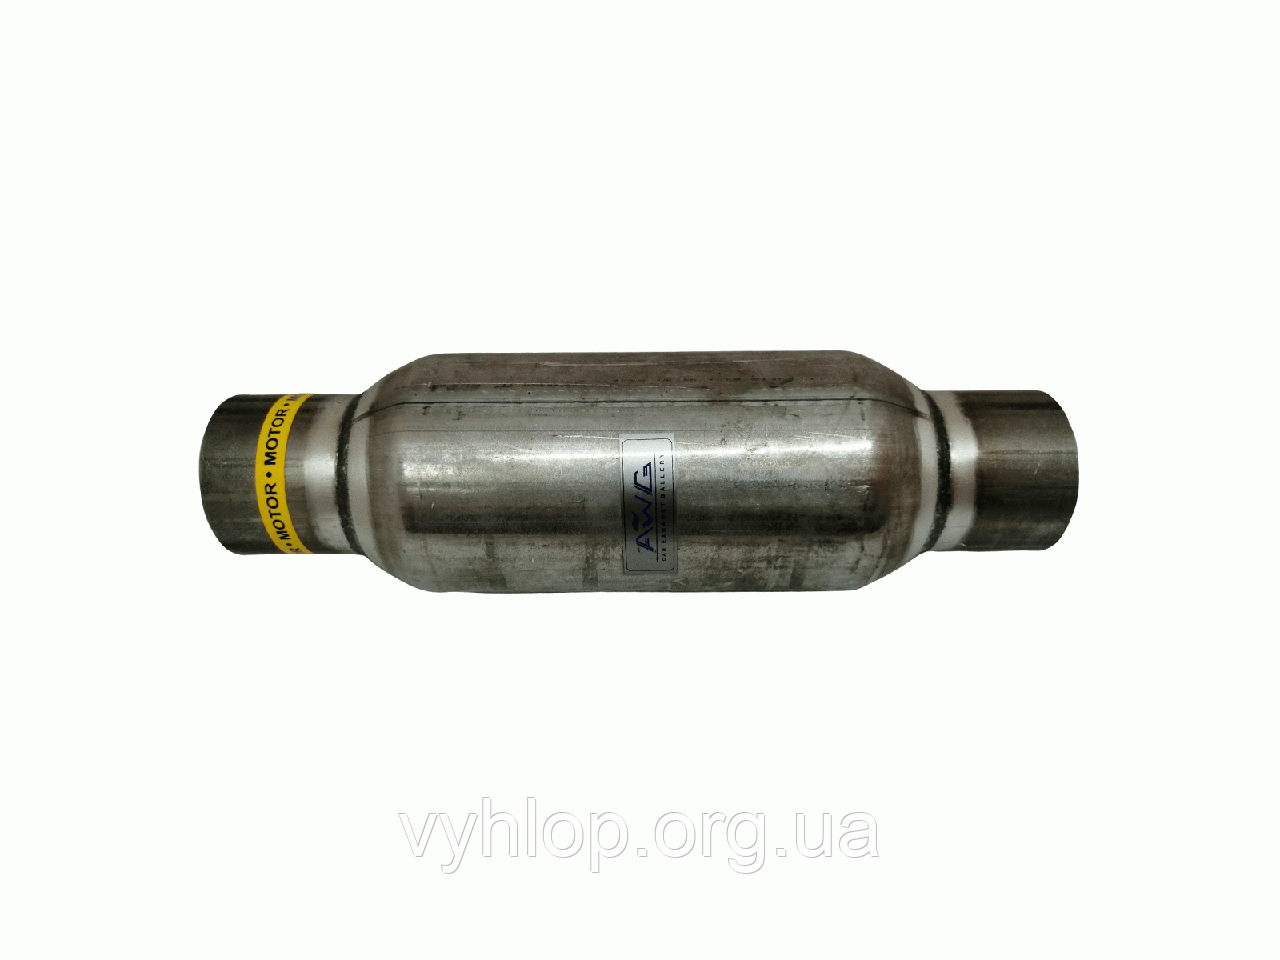 Строгер (Х-Резонатор) ф 55, довжина 550 (55x550) AWG